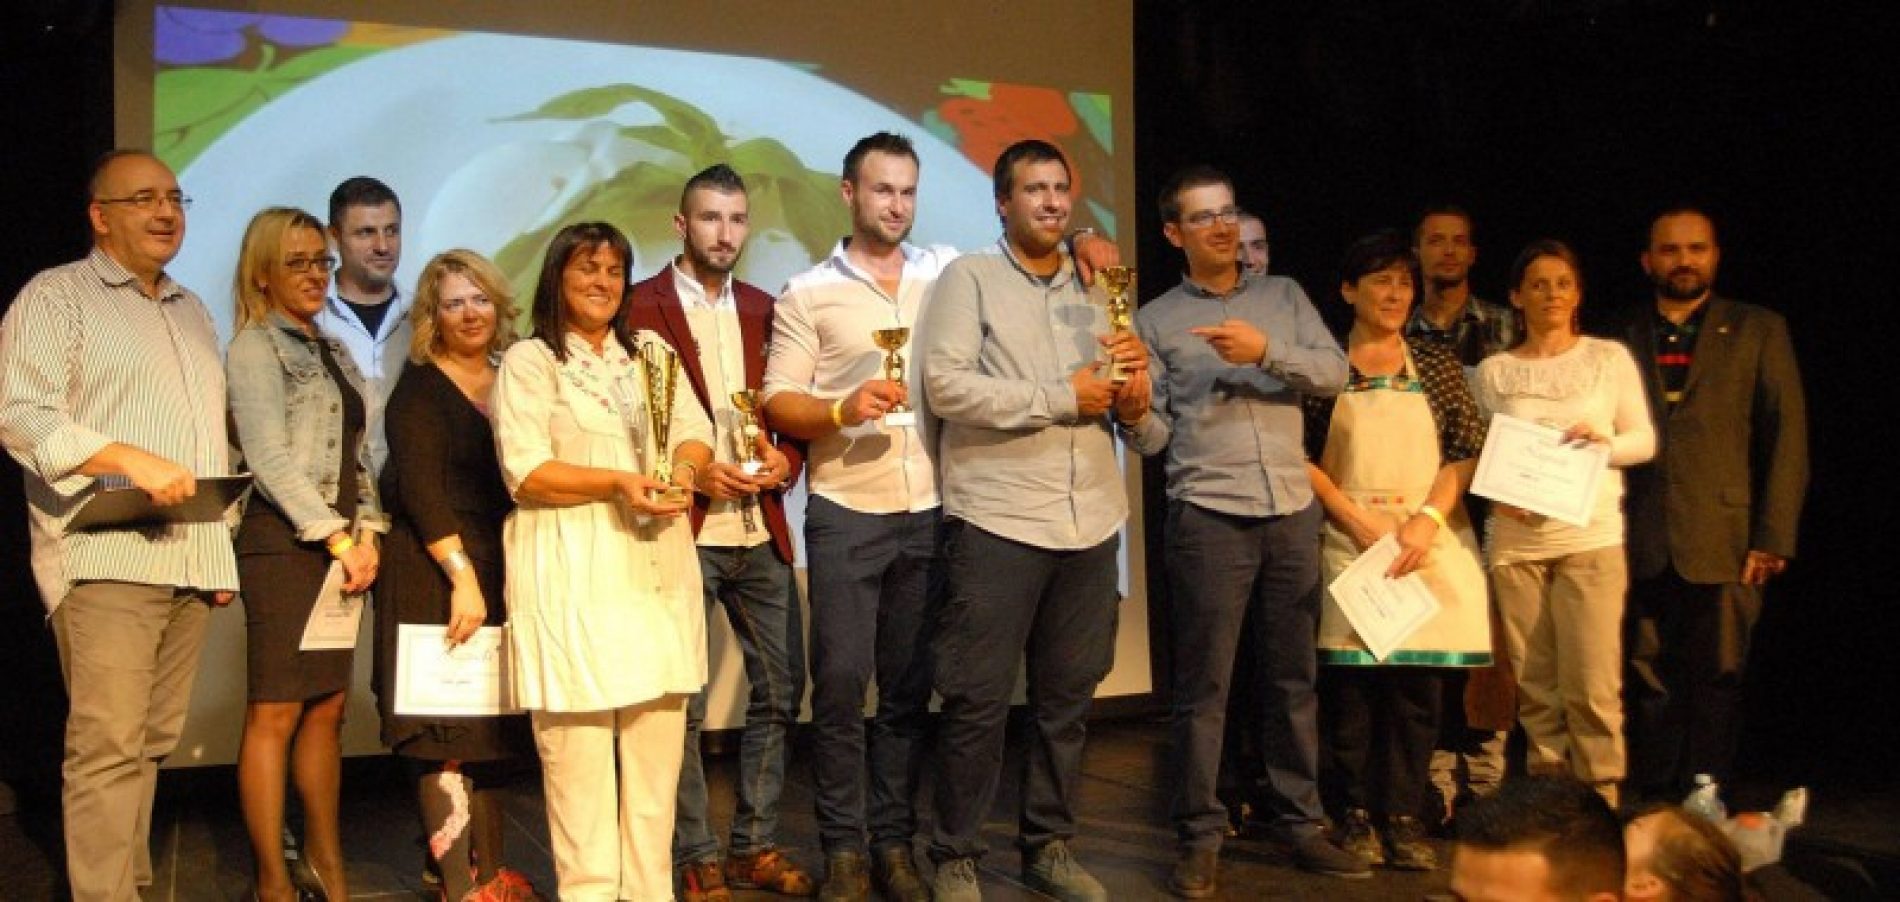 Još jedan uspjeh bh. proizvođača sireva: Vrhunski bosanskohercegovački sirevi osvojili prve nagrade